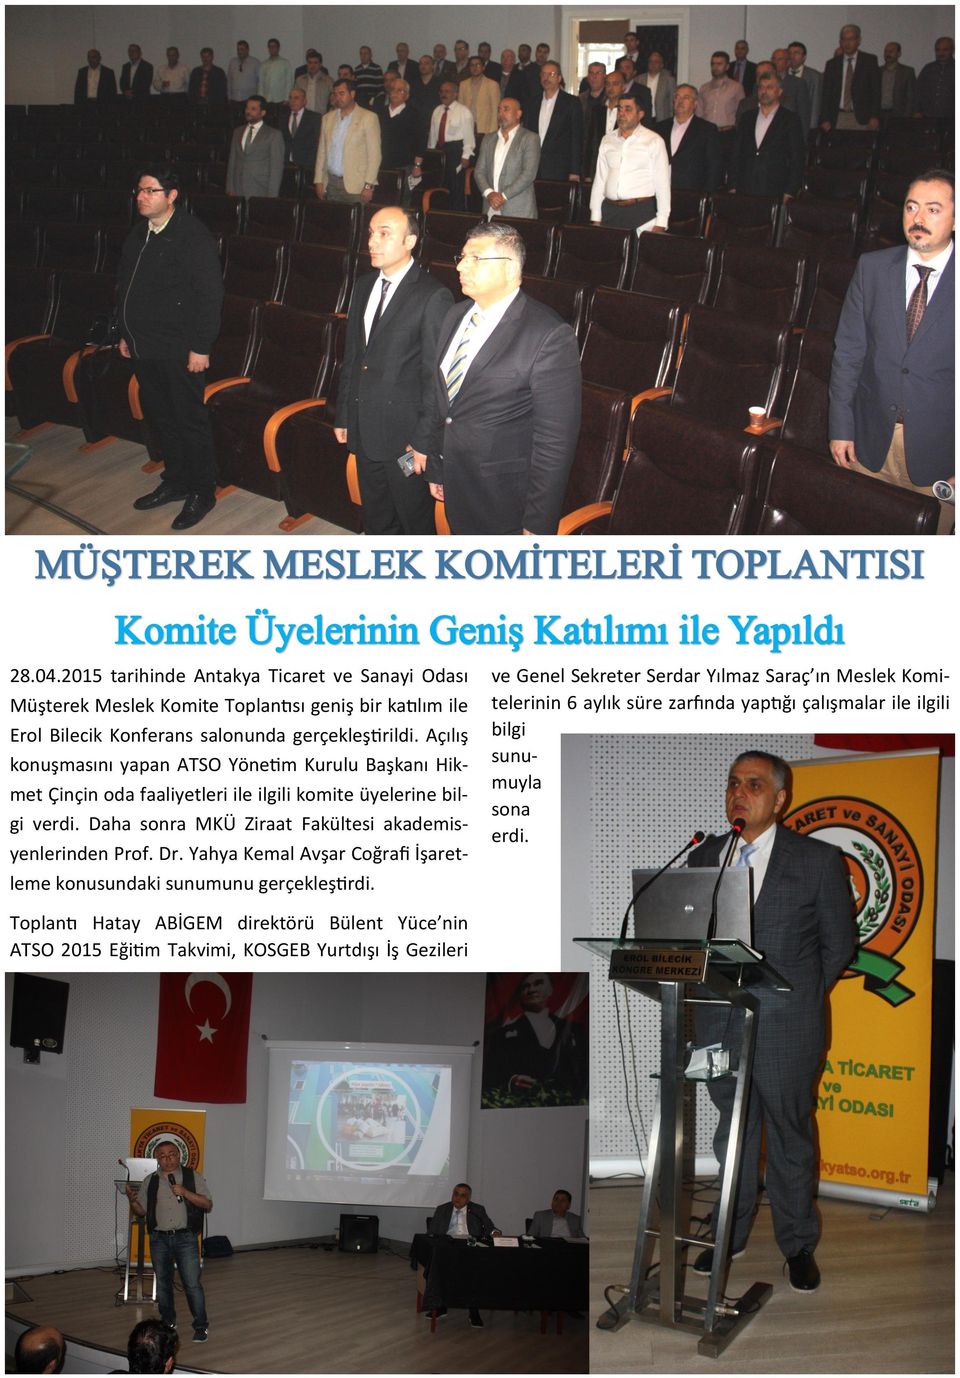 Daha sonra MKÜ Ziraat Fakültesi akademisyenlerinden Prof. Dr. Yahya Kemal Avşar Coğrafi İşaretleme konusundaki sunumunu gerçekleştirdi.